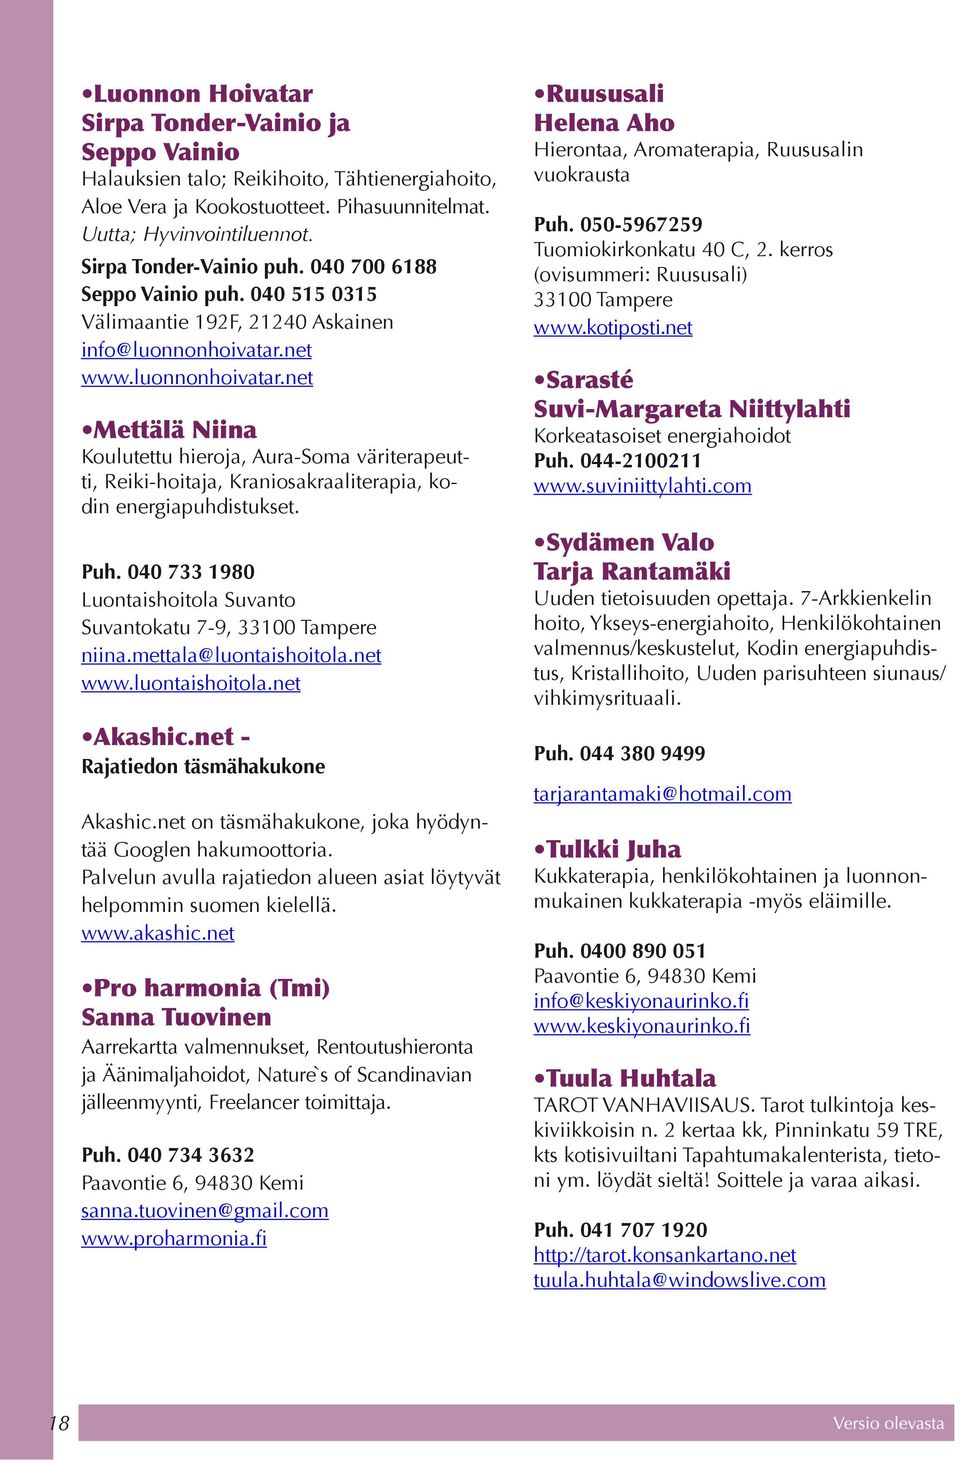 net www.luonnonhoivatar.net Mettälä Niina Koulutettu hieroja, Aura-Soma väriterapeutti, Reiki-hoitaja, Kraniosakraaliterapia, kodin energiapuhdistukset. Puh.